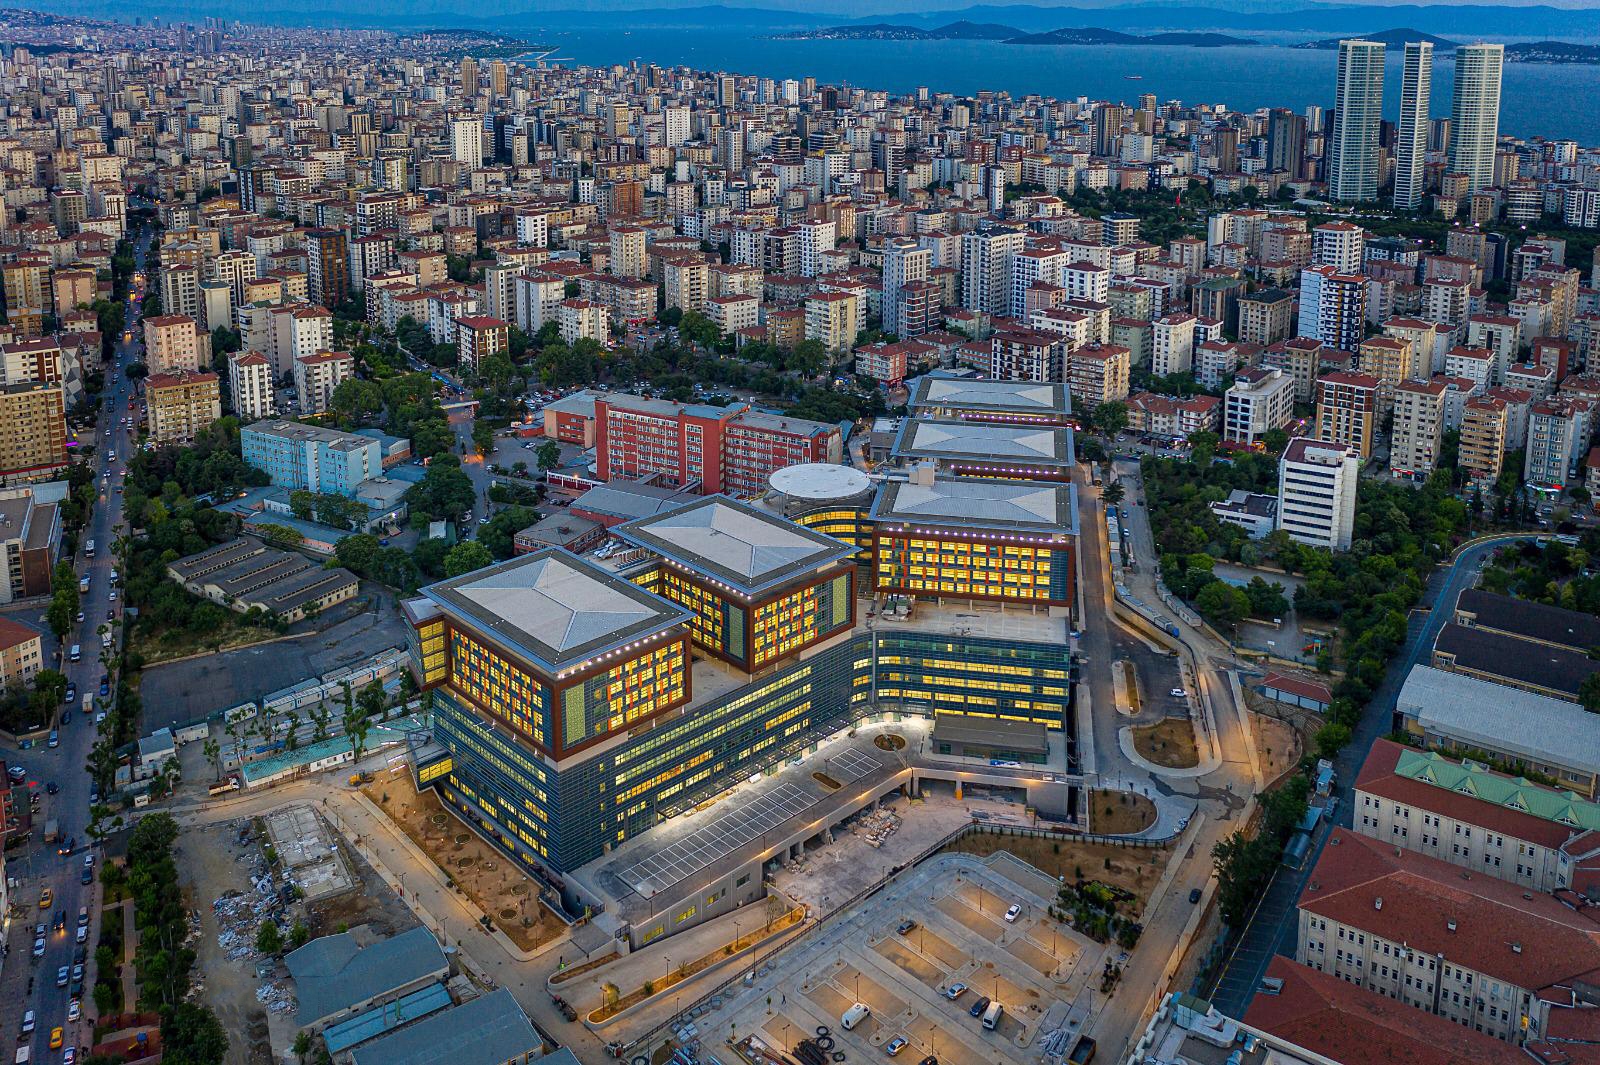 المستشفيات التركية تتميز بتقديم خدمات طبية عالية الجودة وتتبنى معايير صحية عالية